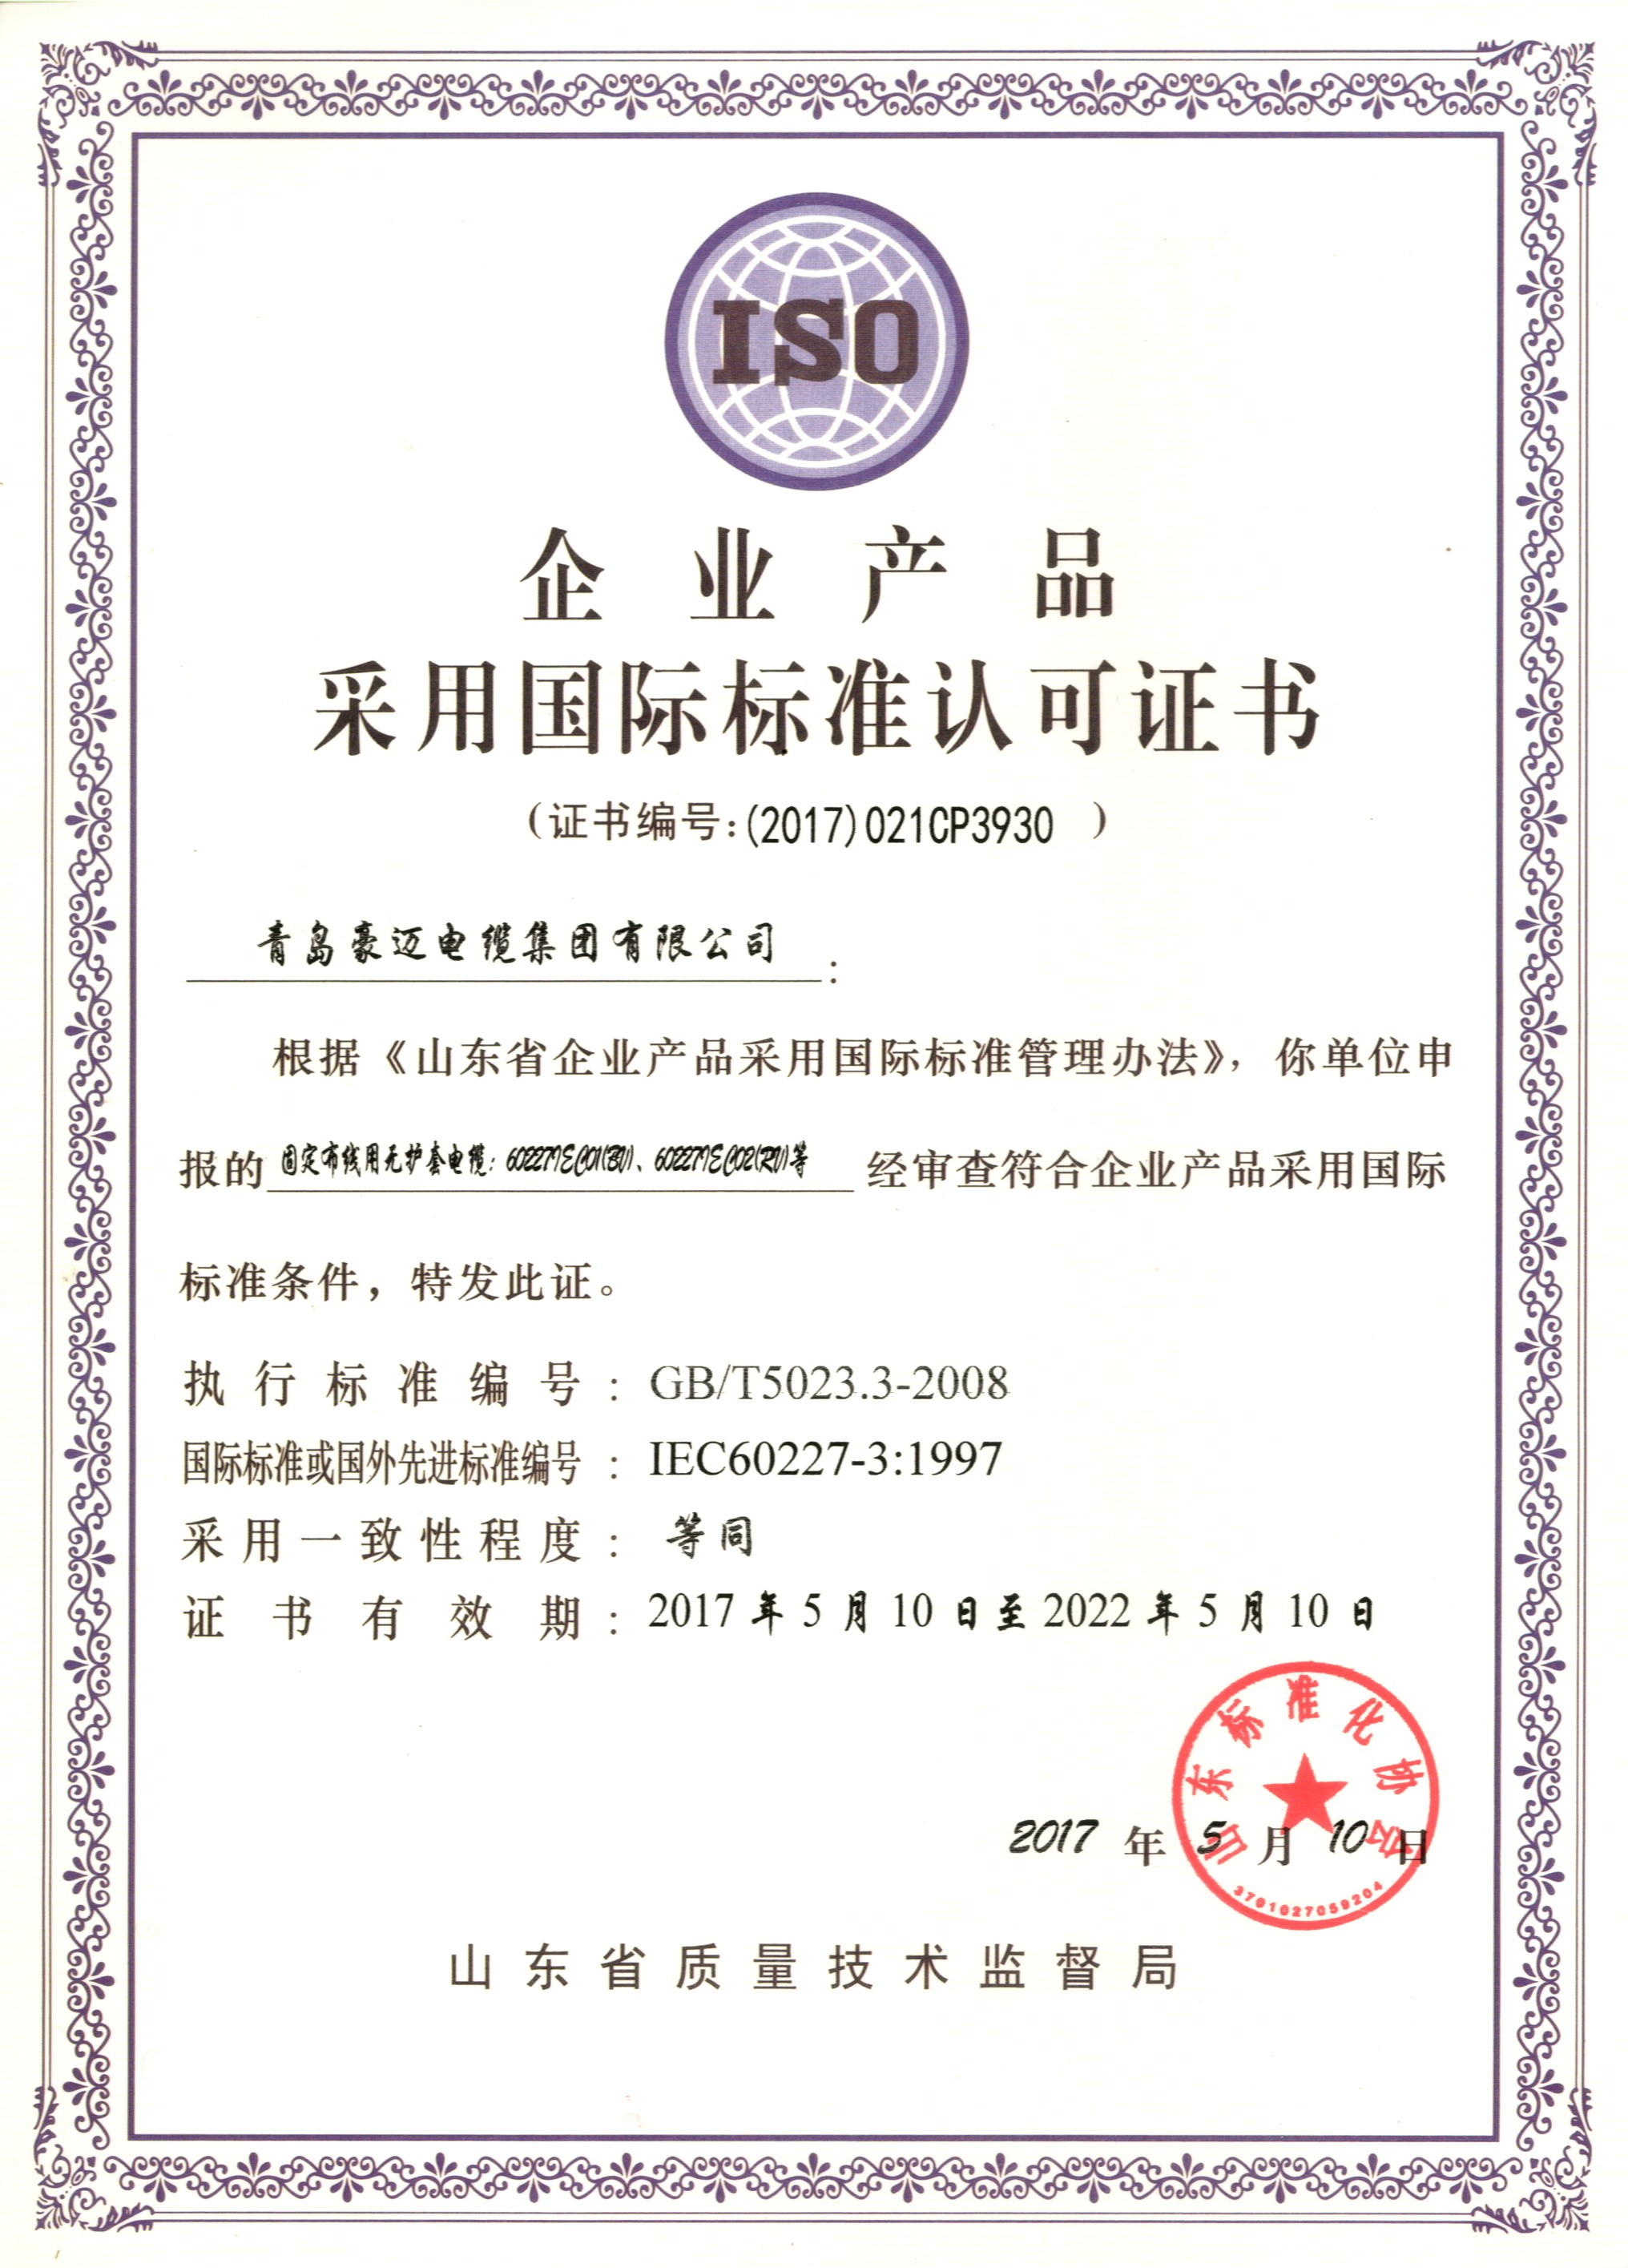 企业产品采用国际标准认可证书2